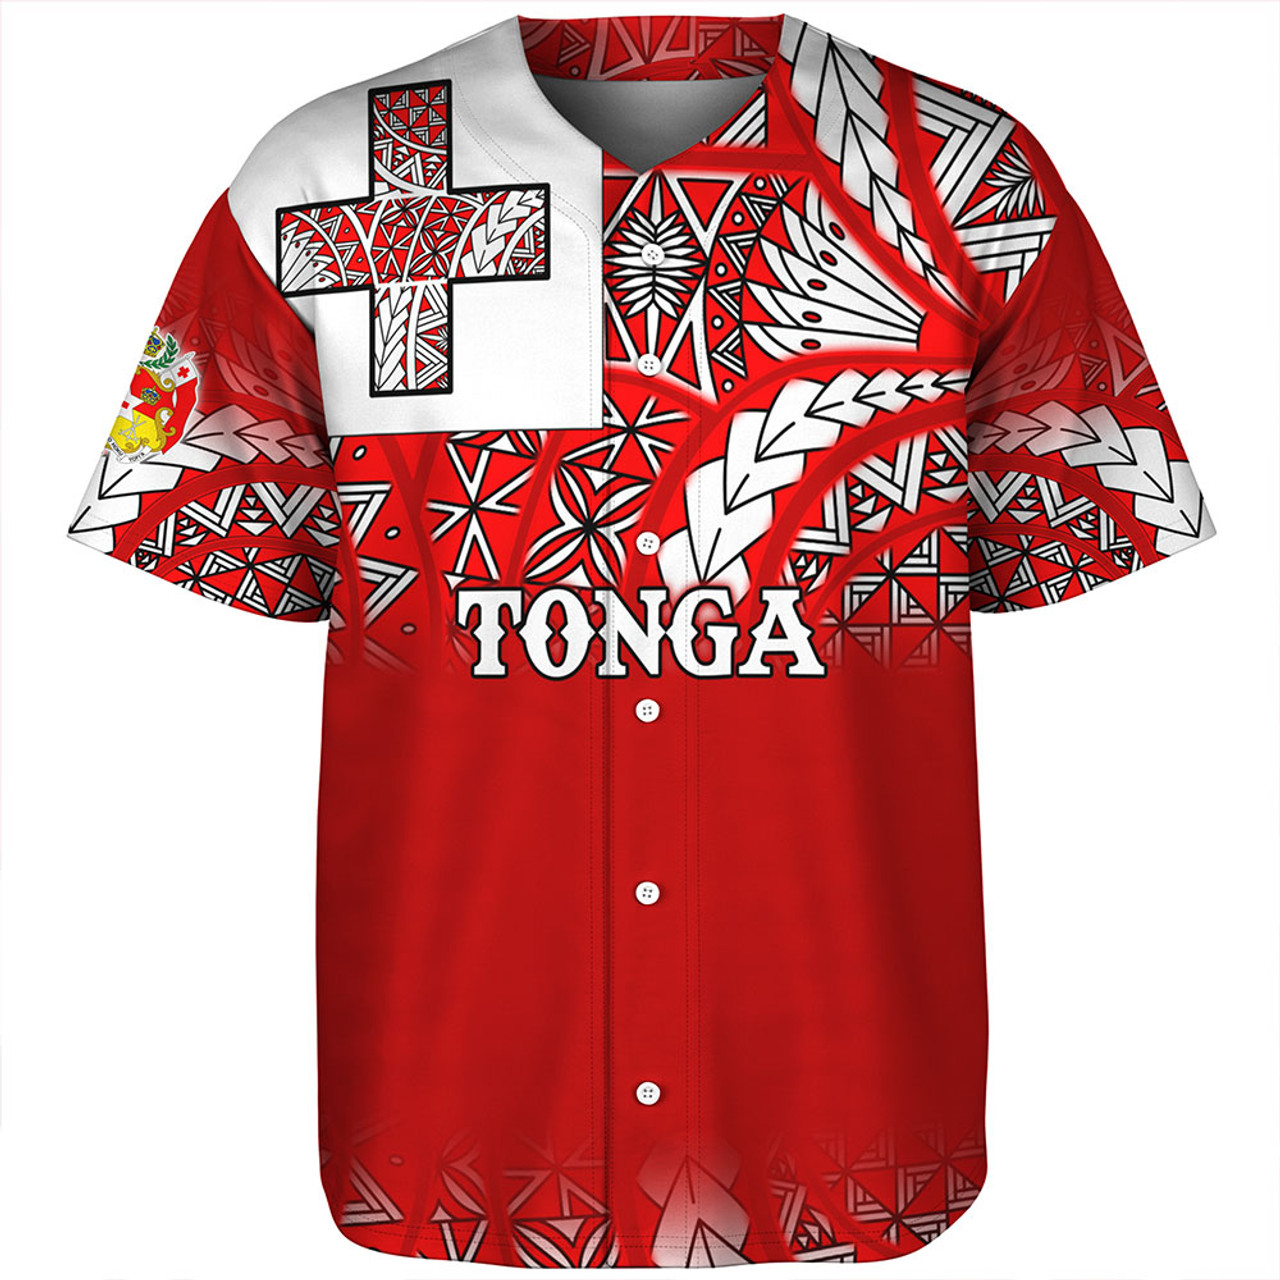 Tonga Baseball Shirt - Tonga Flag Color With Traditional Patterns